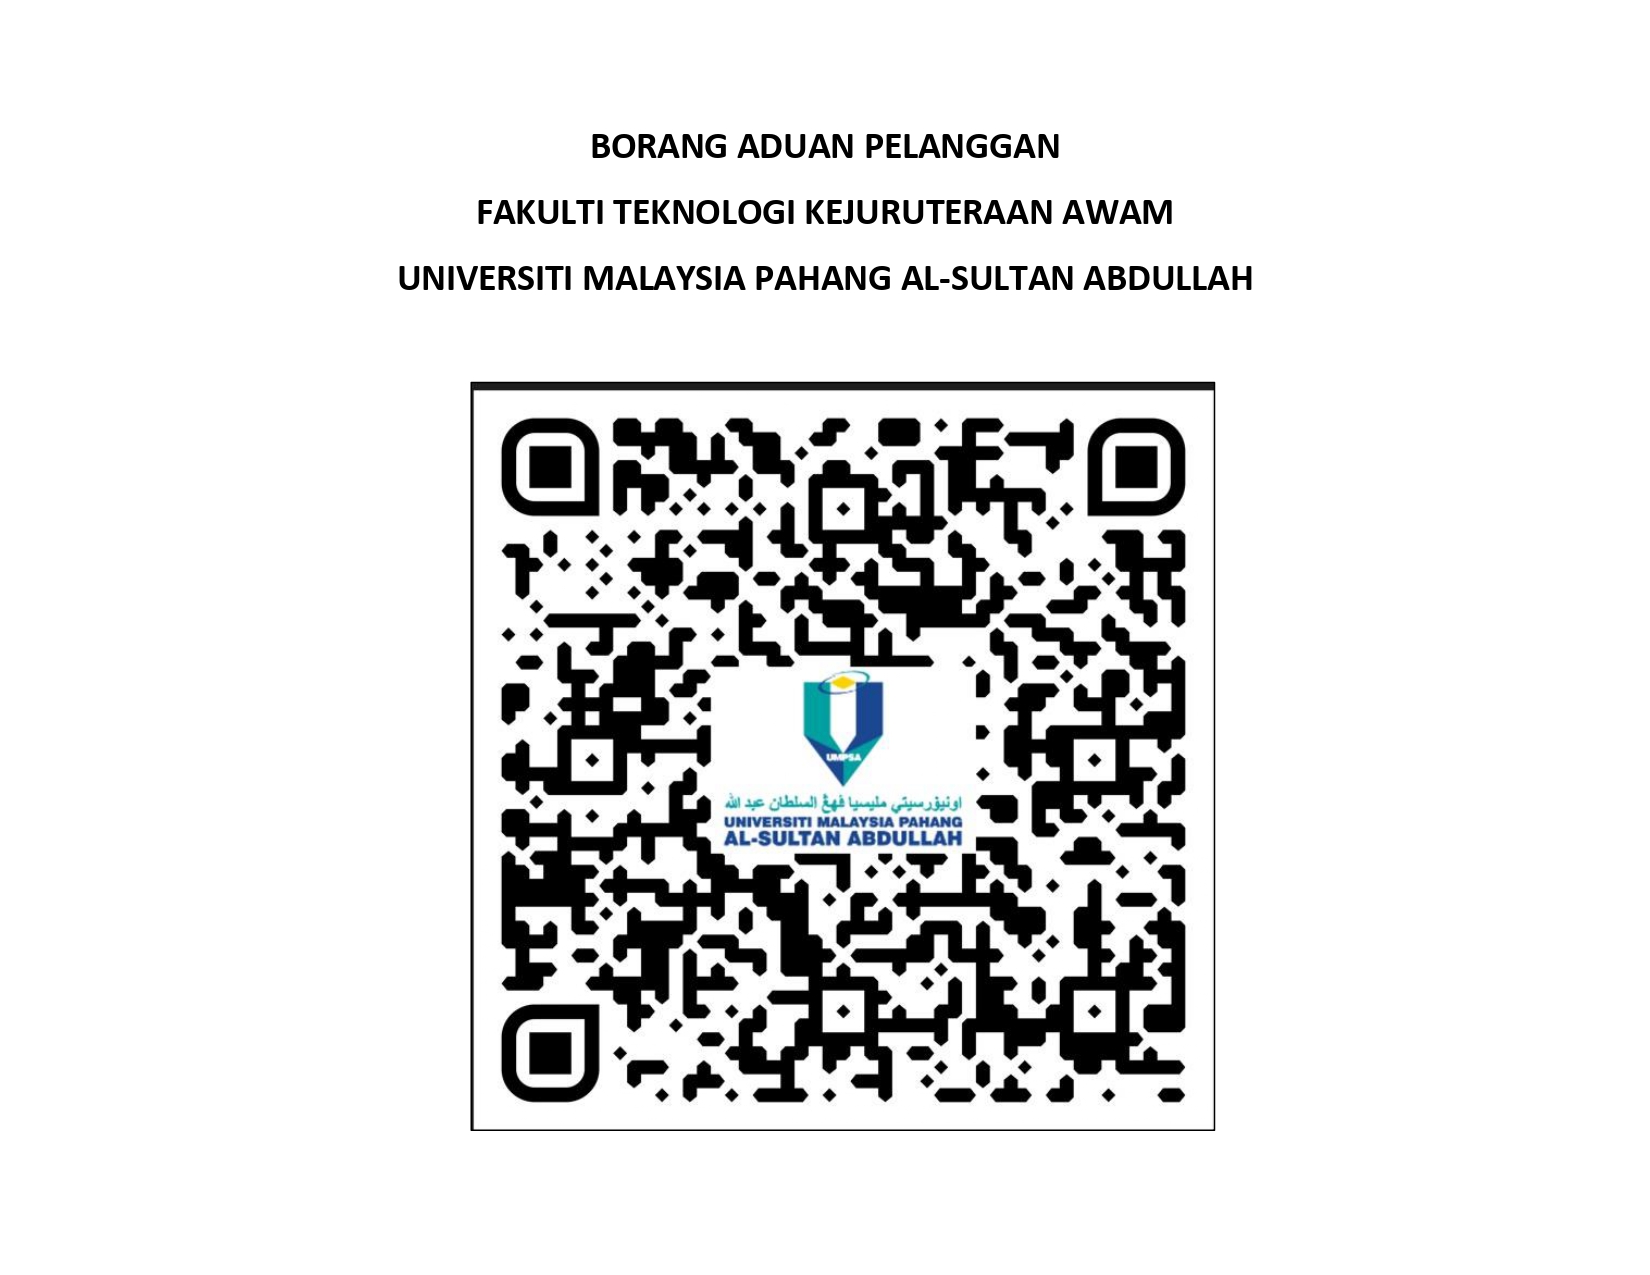 Borang Aduan Pelanggan Fakulti Teknologi Kejuruteraan Awam, Universiti Malaysia Pahang Al-Sultan Abdullah (UMPSA) untuk makluman kepada semua pelajar FTKA